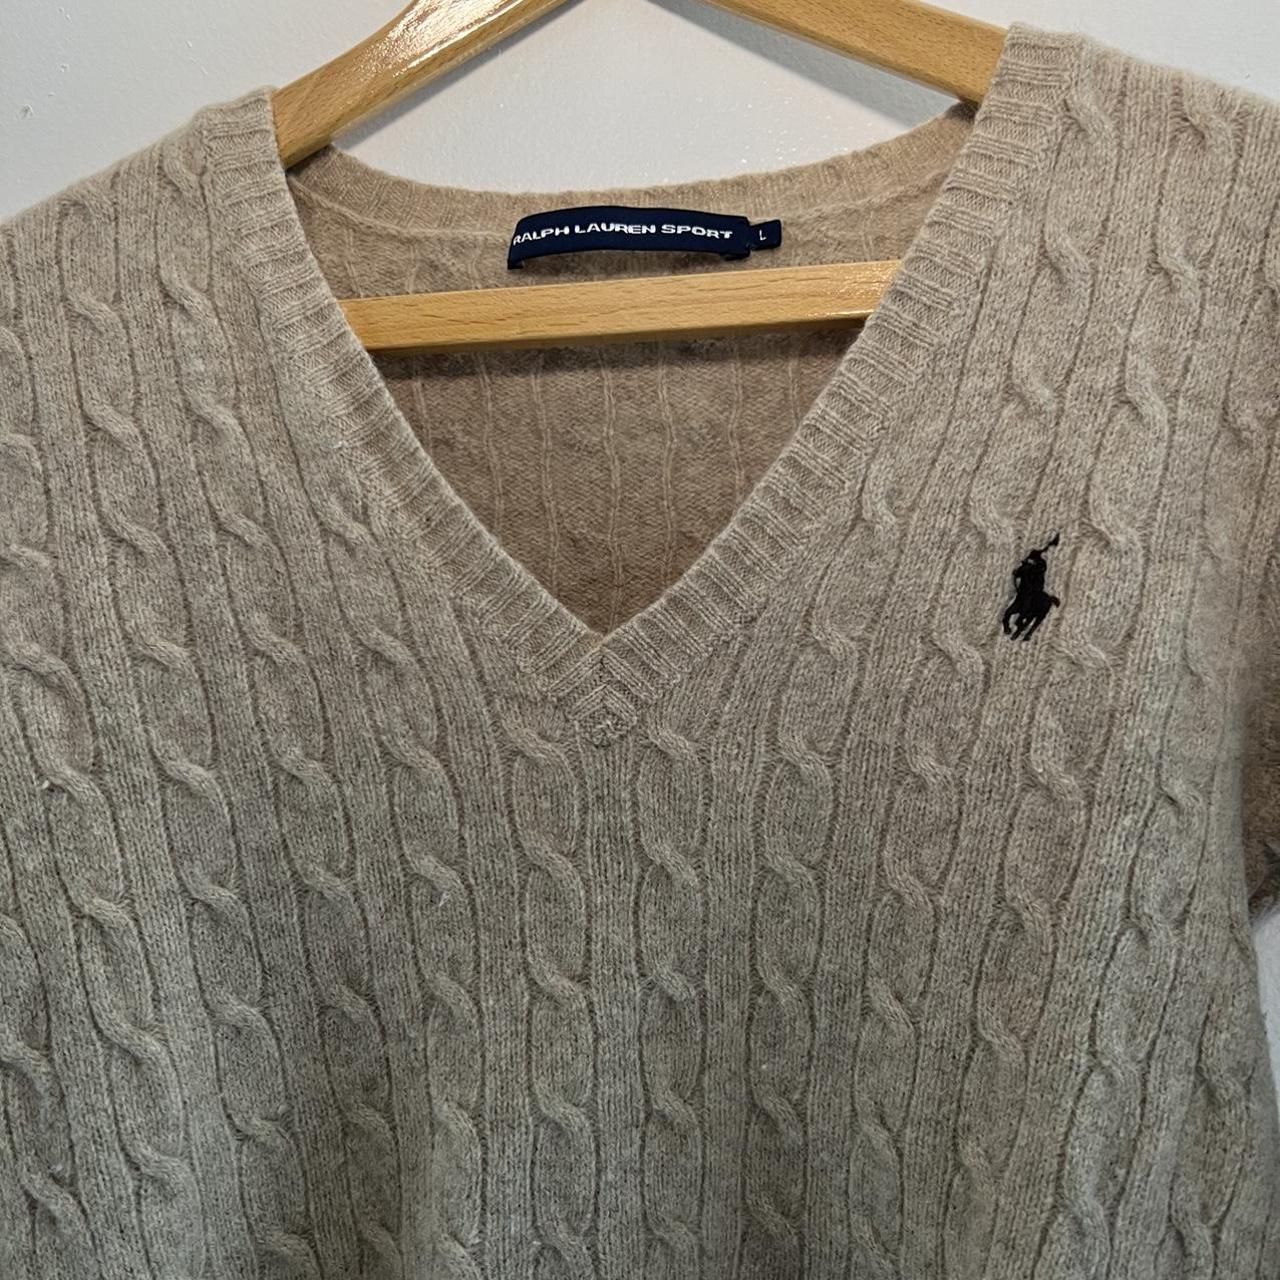 Polo by Ralph Lauren sport, Wool sweater, beige... - Depop